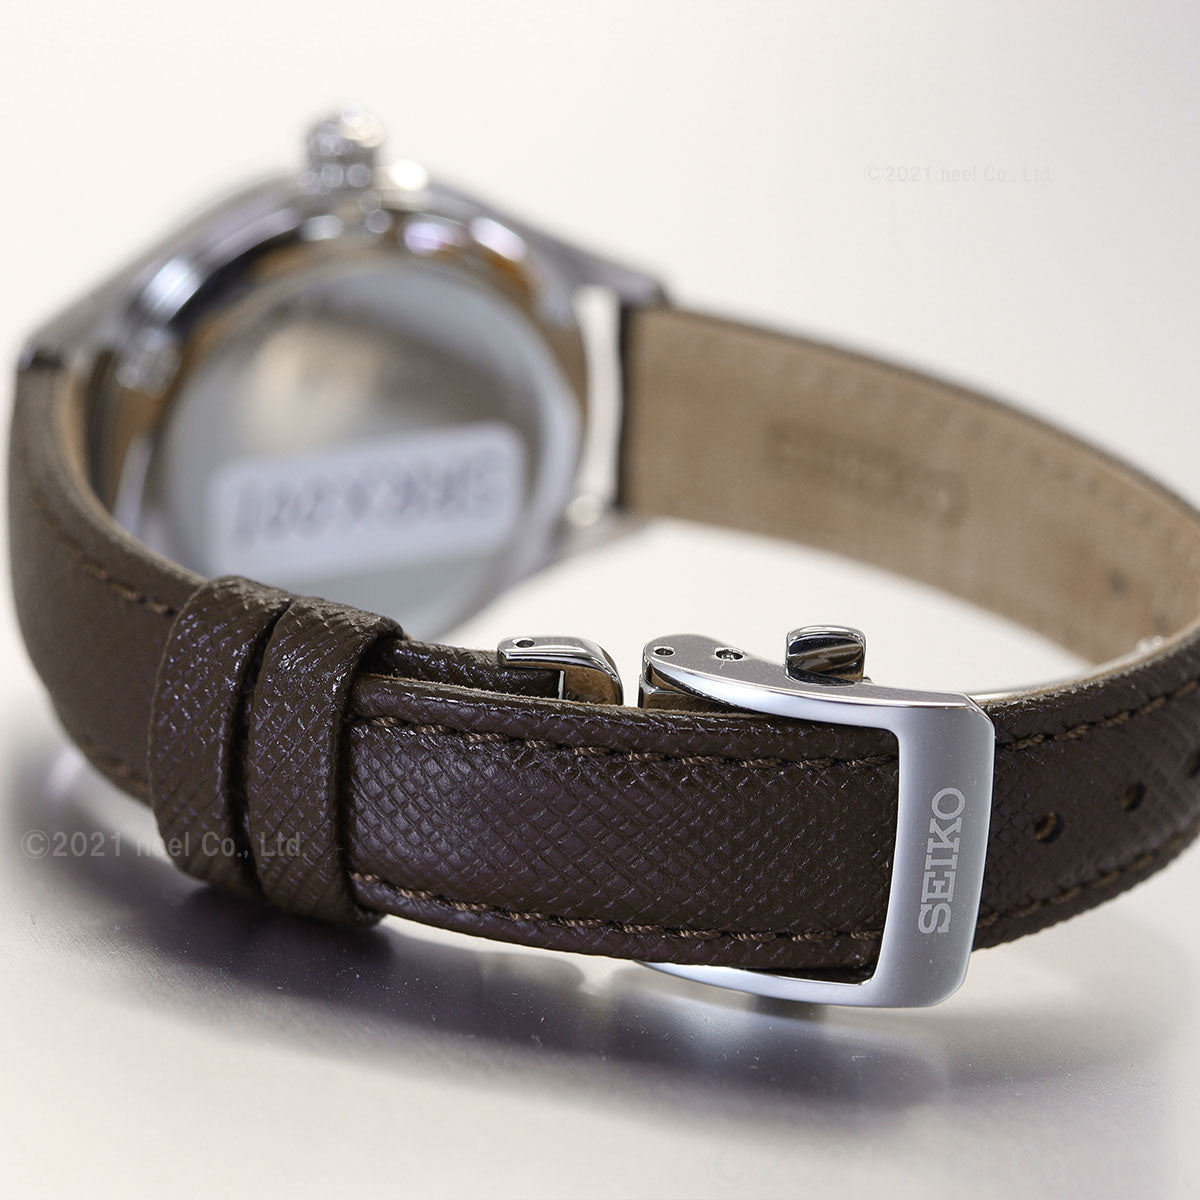 セイコー プレザージュ SEIKO PRESAGE 自動巻き メカニカル コアショップ専用 流通限定モデル 腕時計 レディース SRRX001 プレステージライン 琺瑯ダイヤル